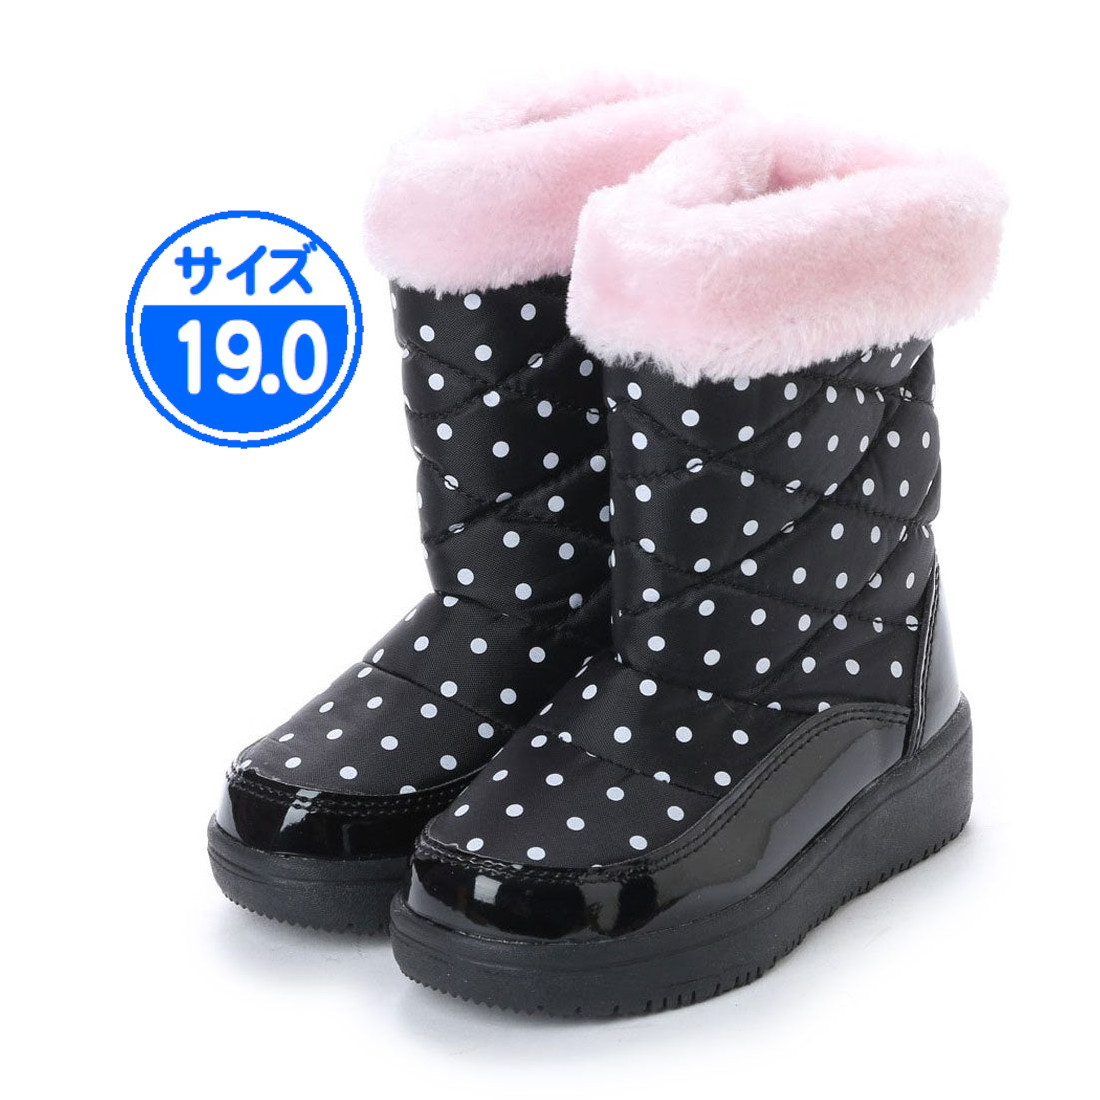 【新品 未使用】子供用 防寒ブーツ ブラック ピンク 19.0cm 17991_画像1